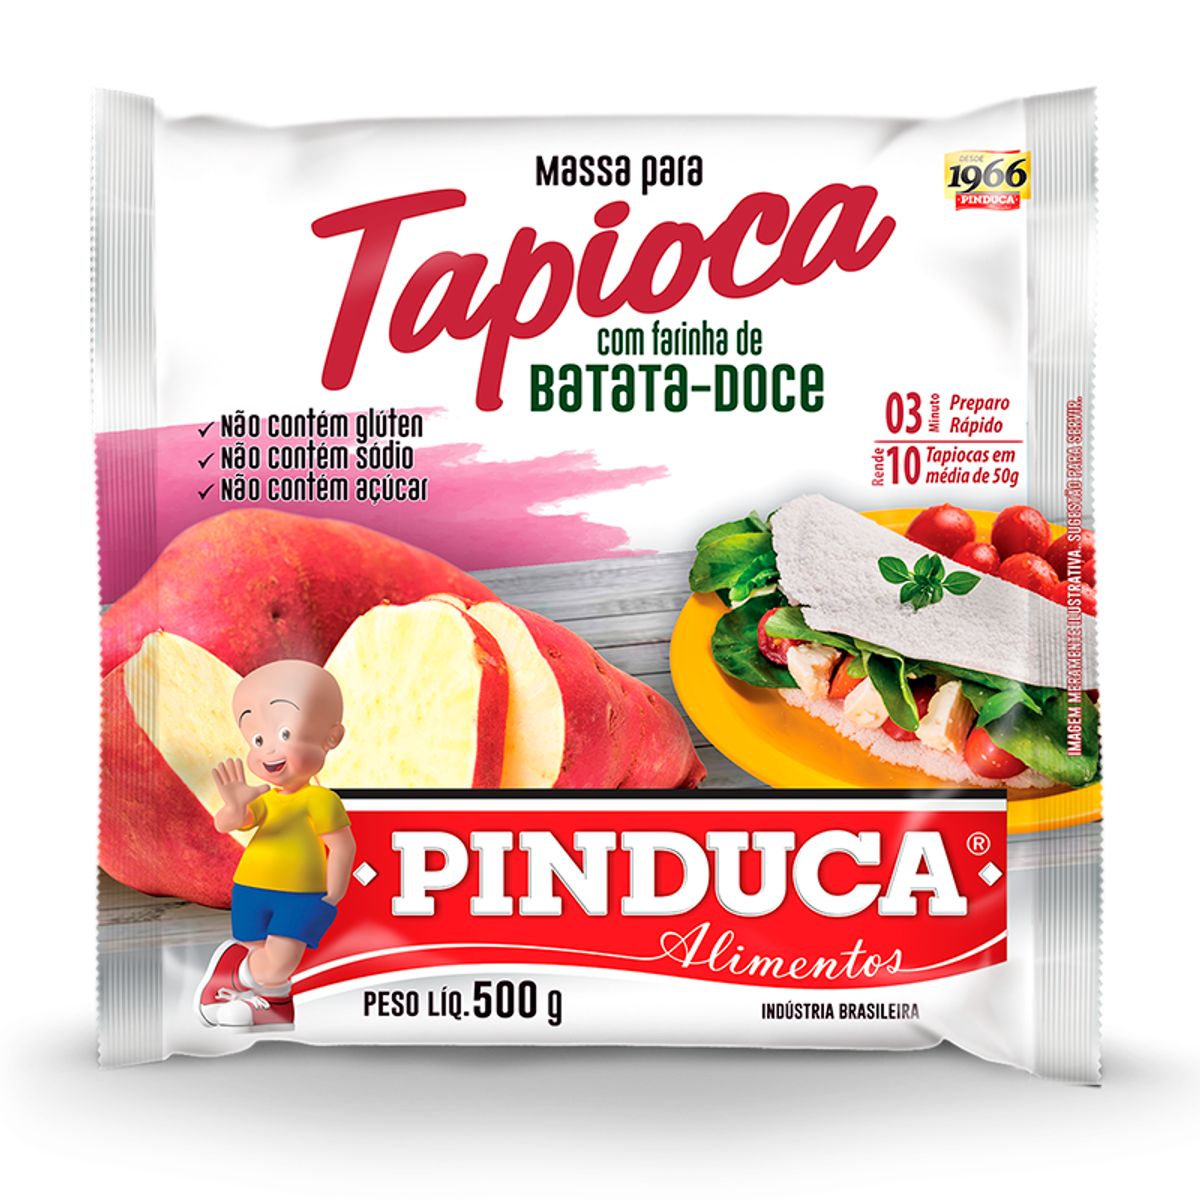 Massa para Tapioca Pinduca com Farinha de Batata Doce 500g